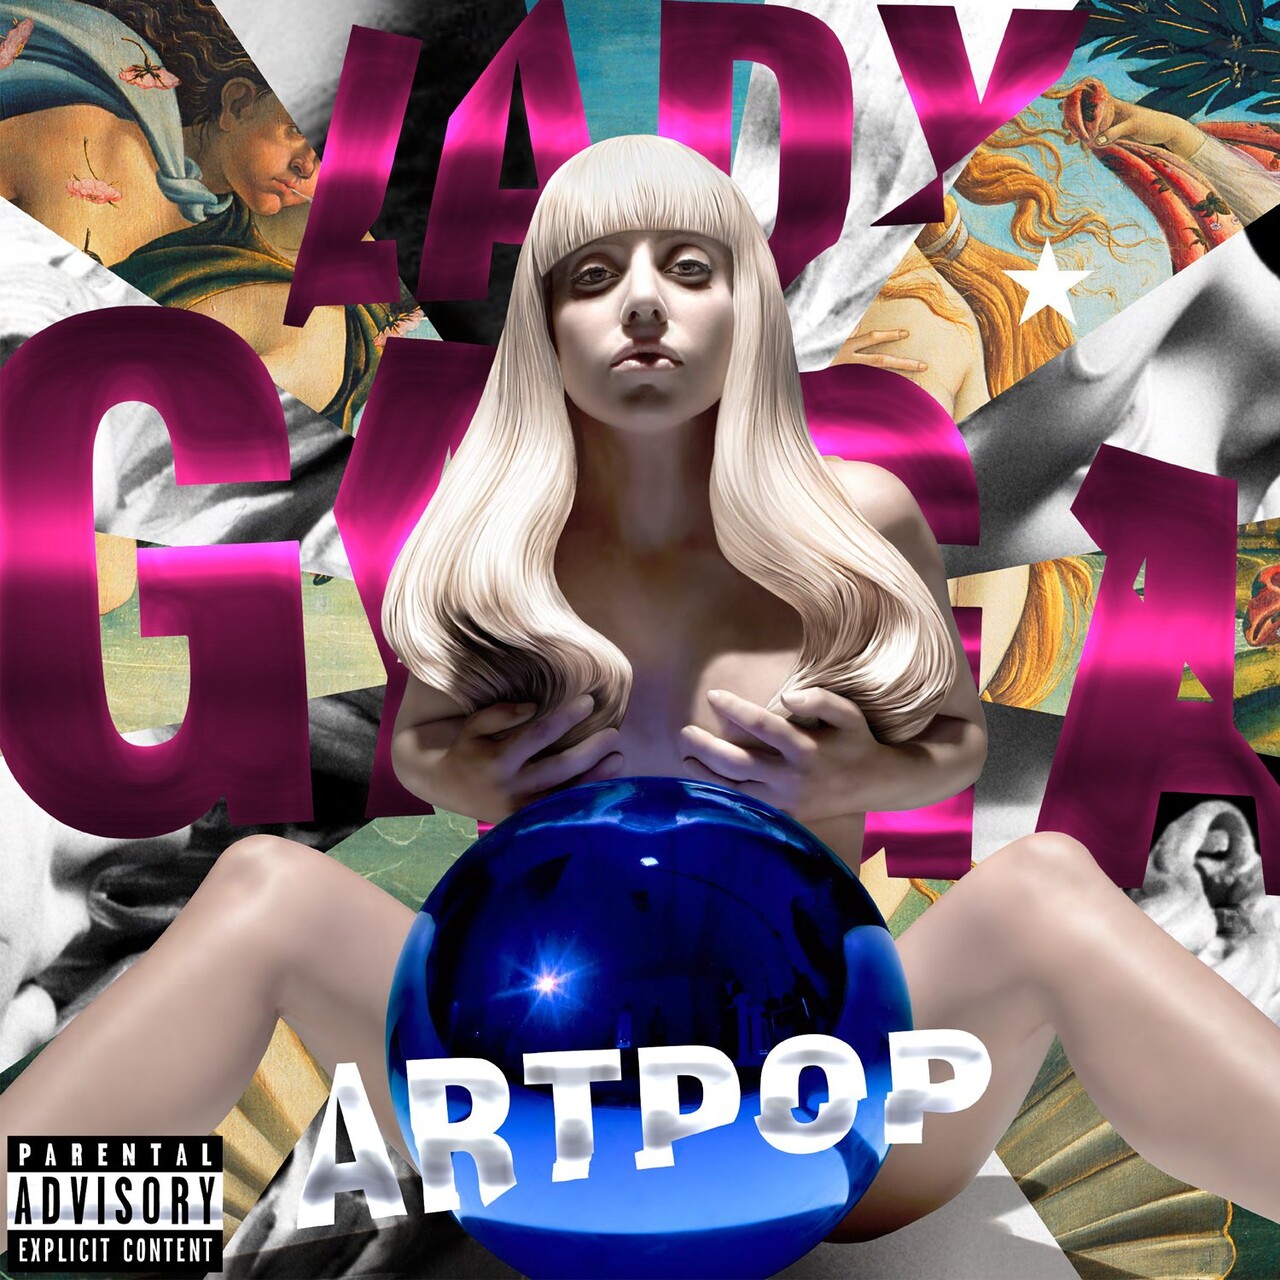 Lady Gaga ARTPOP Cover (Fan-Made) by nuntawat12345 on 